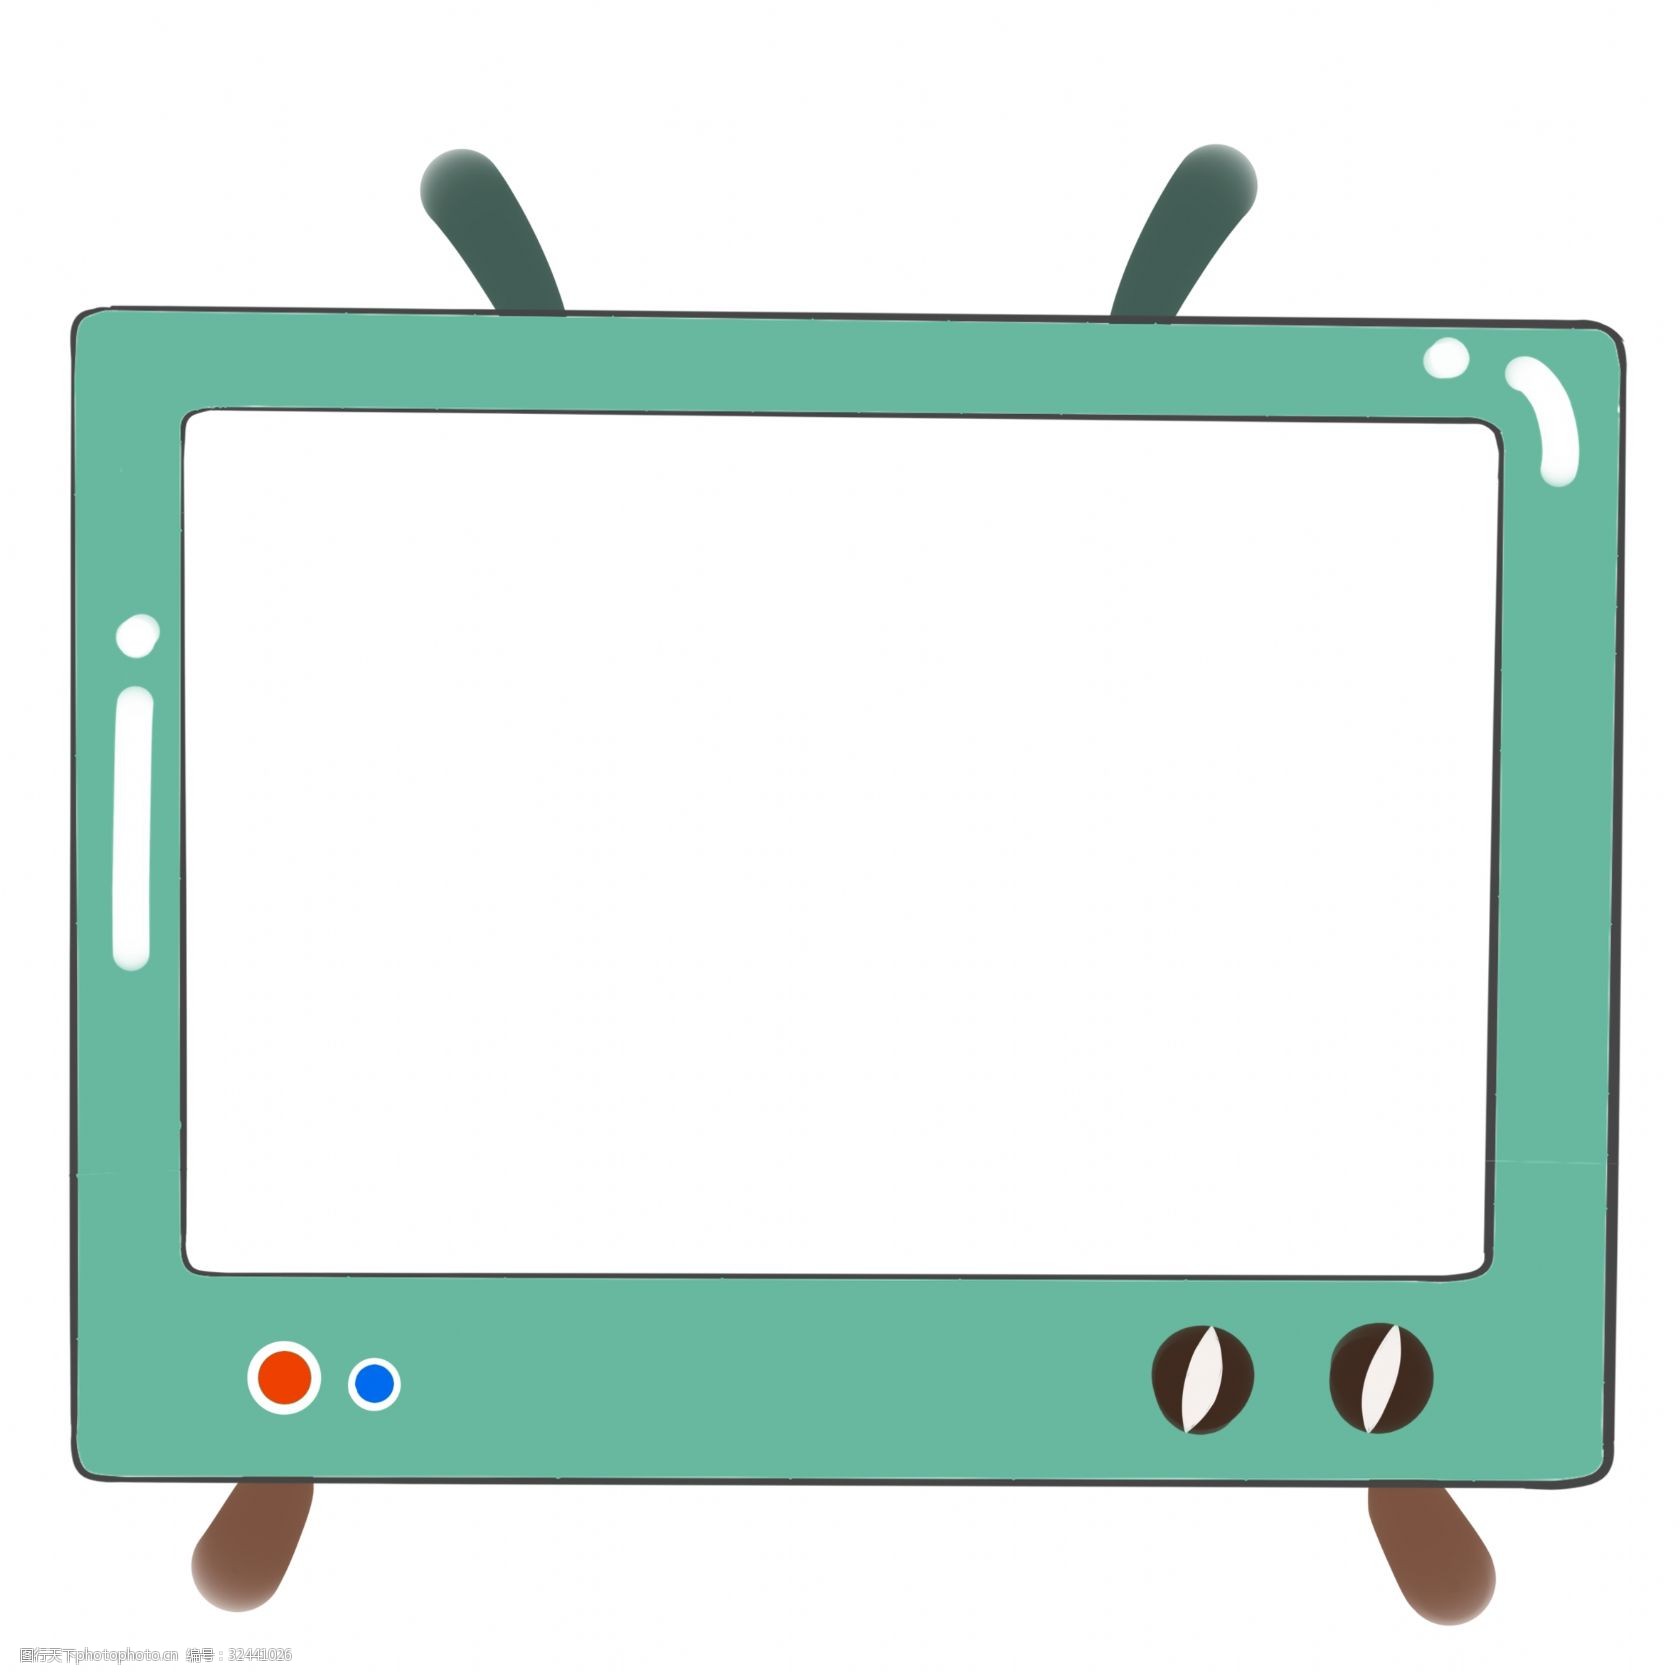 关键词:可爱电视机装饰边框 电视机边框 卡通电视边框 绿色装饰边框